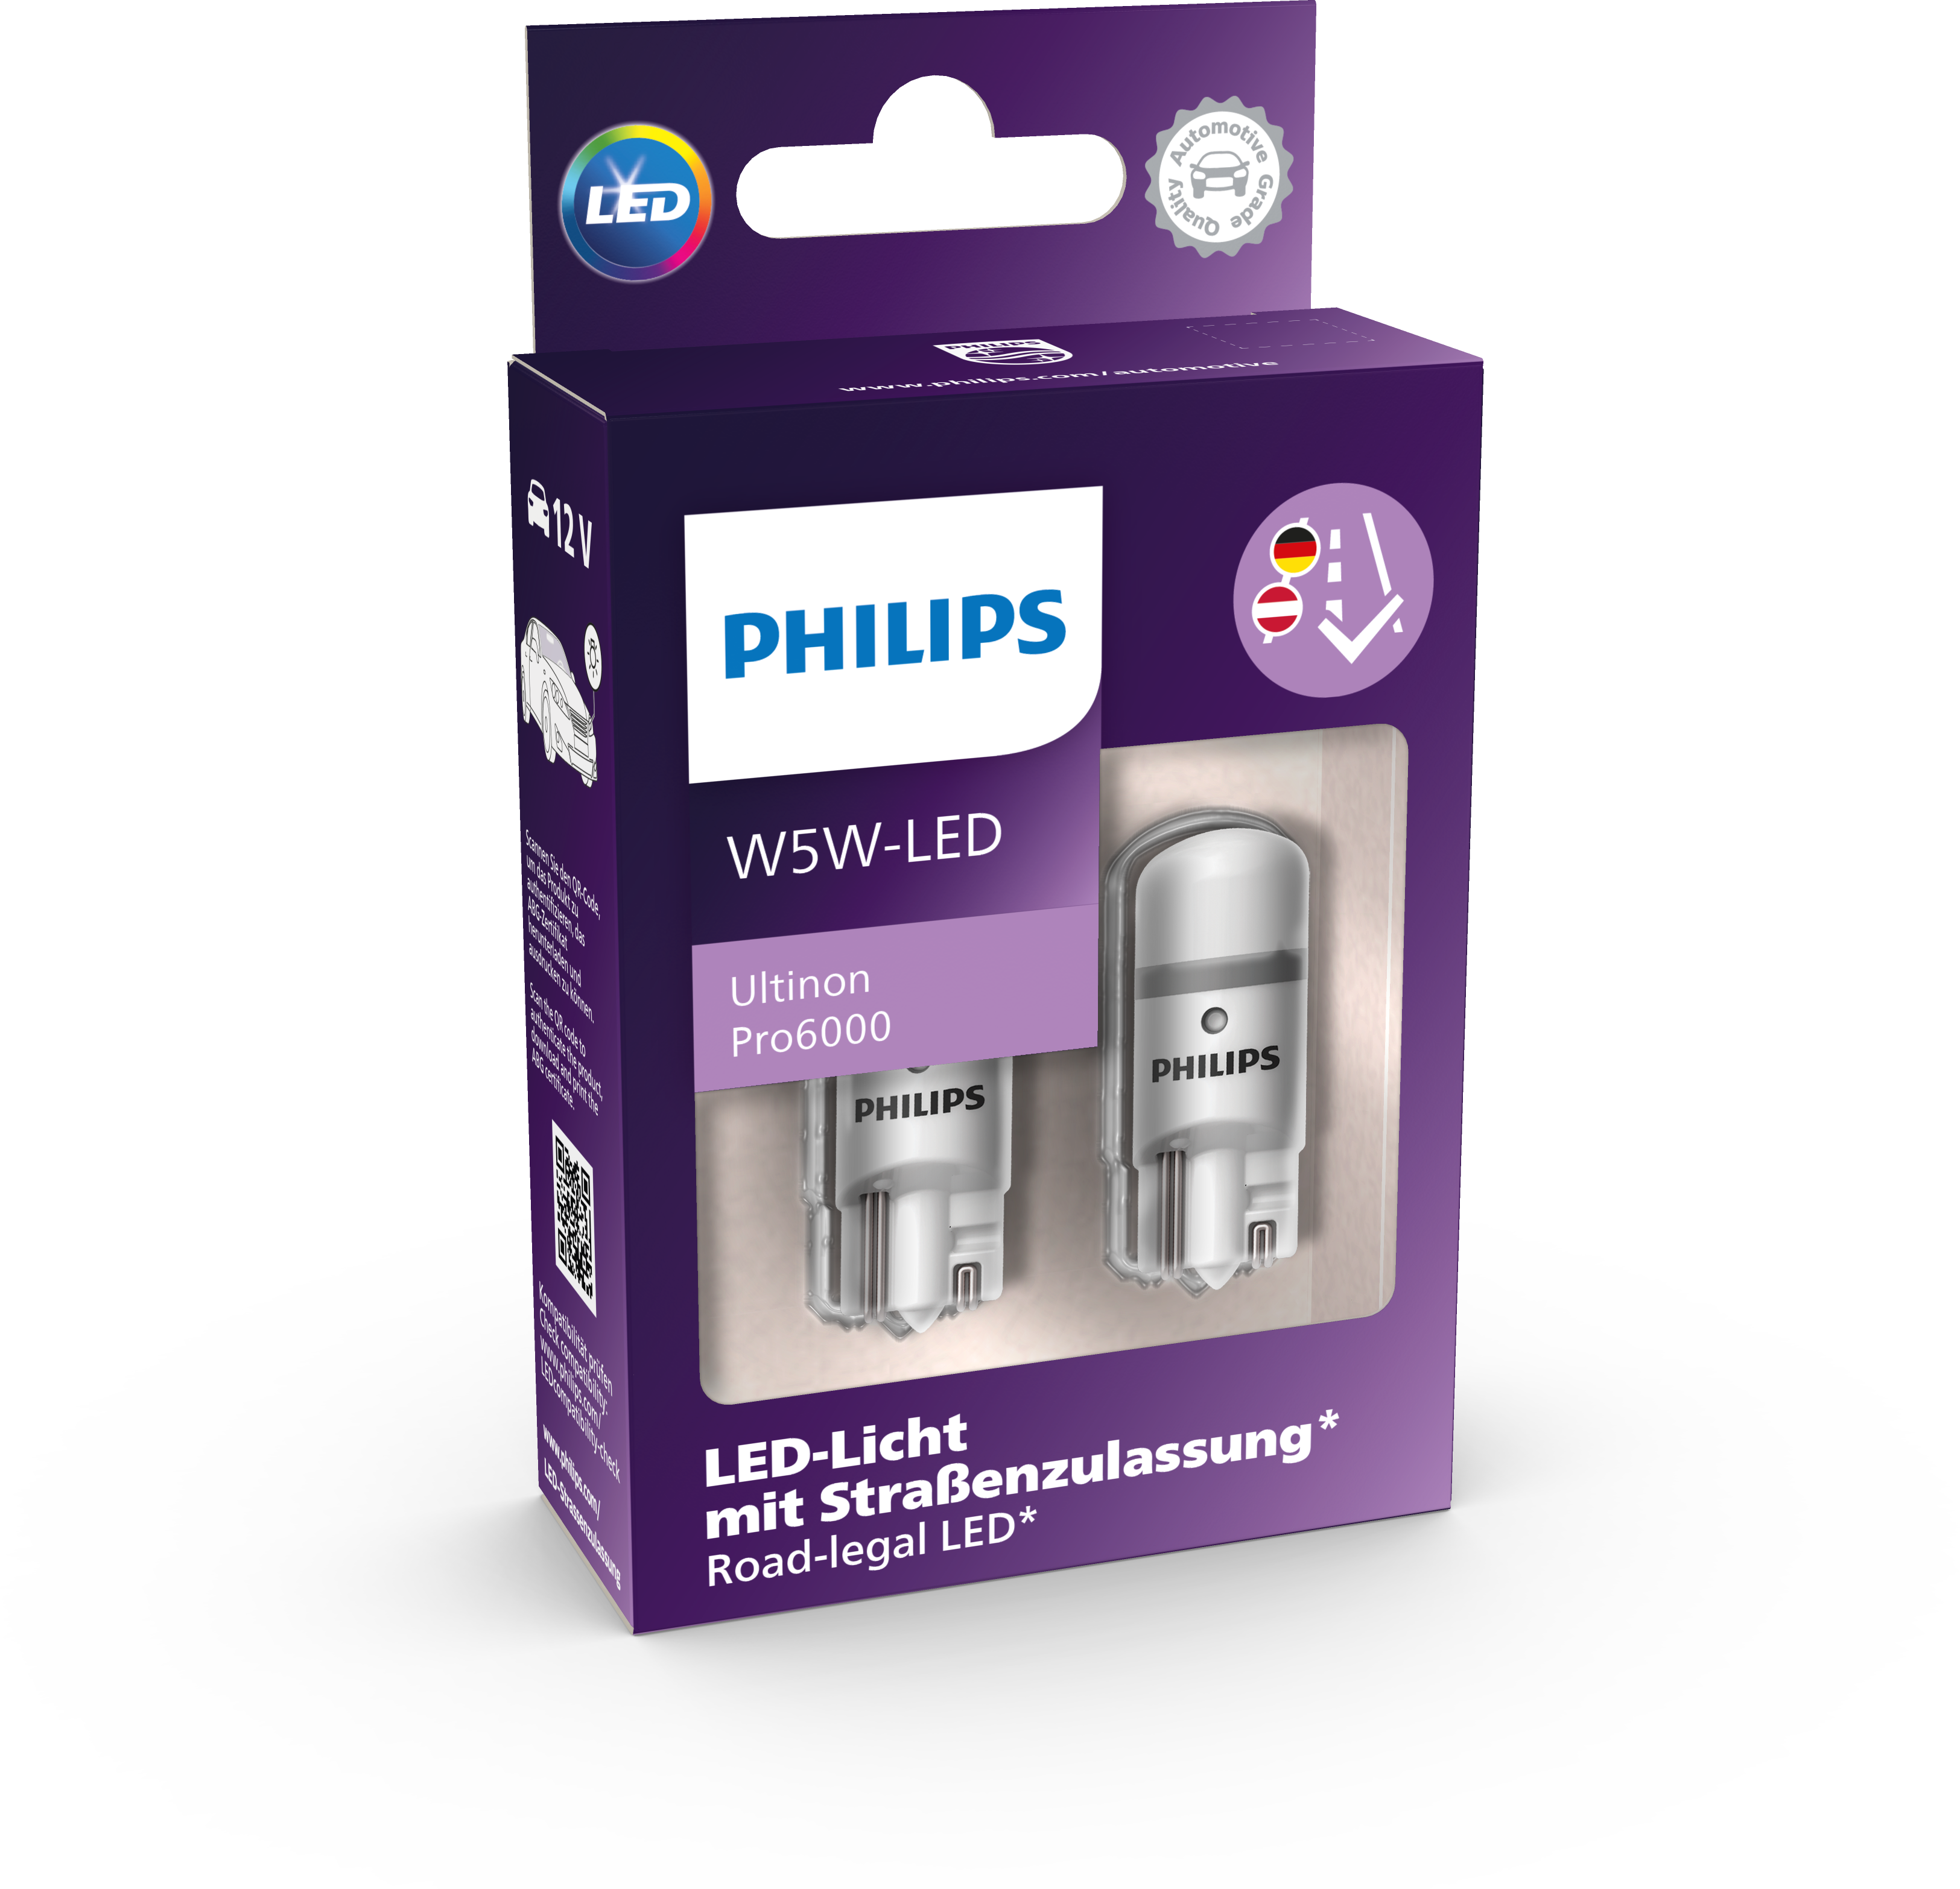 Philips X-tremeVision Pro150 H1 H4 H7 Halogen bis zu 150% mehr Licht 55W  12V